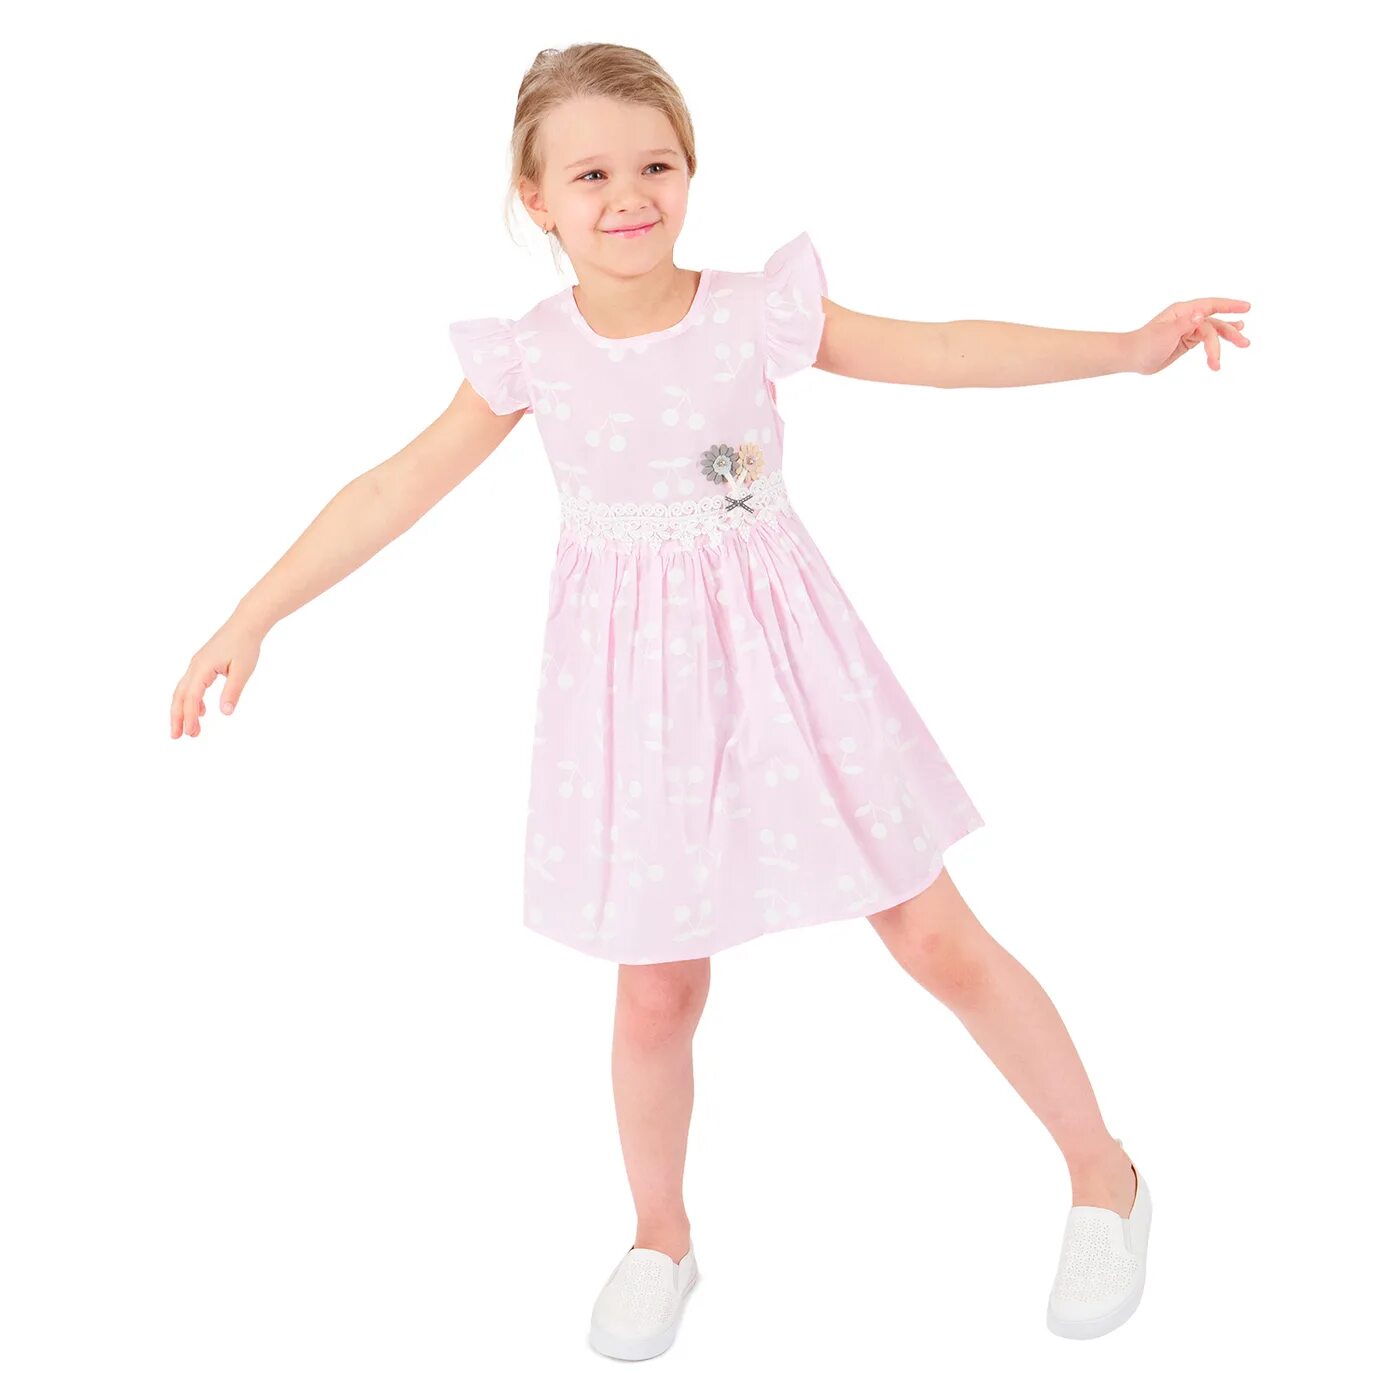 Сайт доч. Малинка платье детское. Платье с малинкой. Детское платье 1291883816. Малинка платье детское для танца.